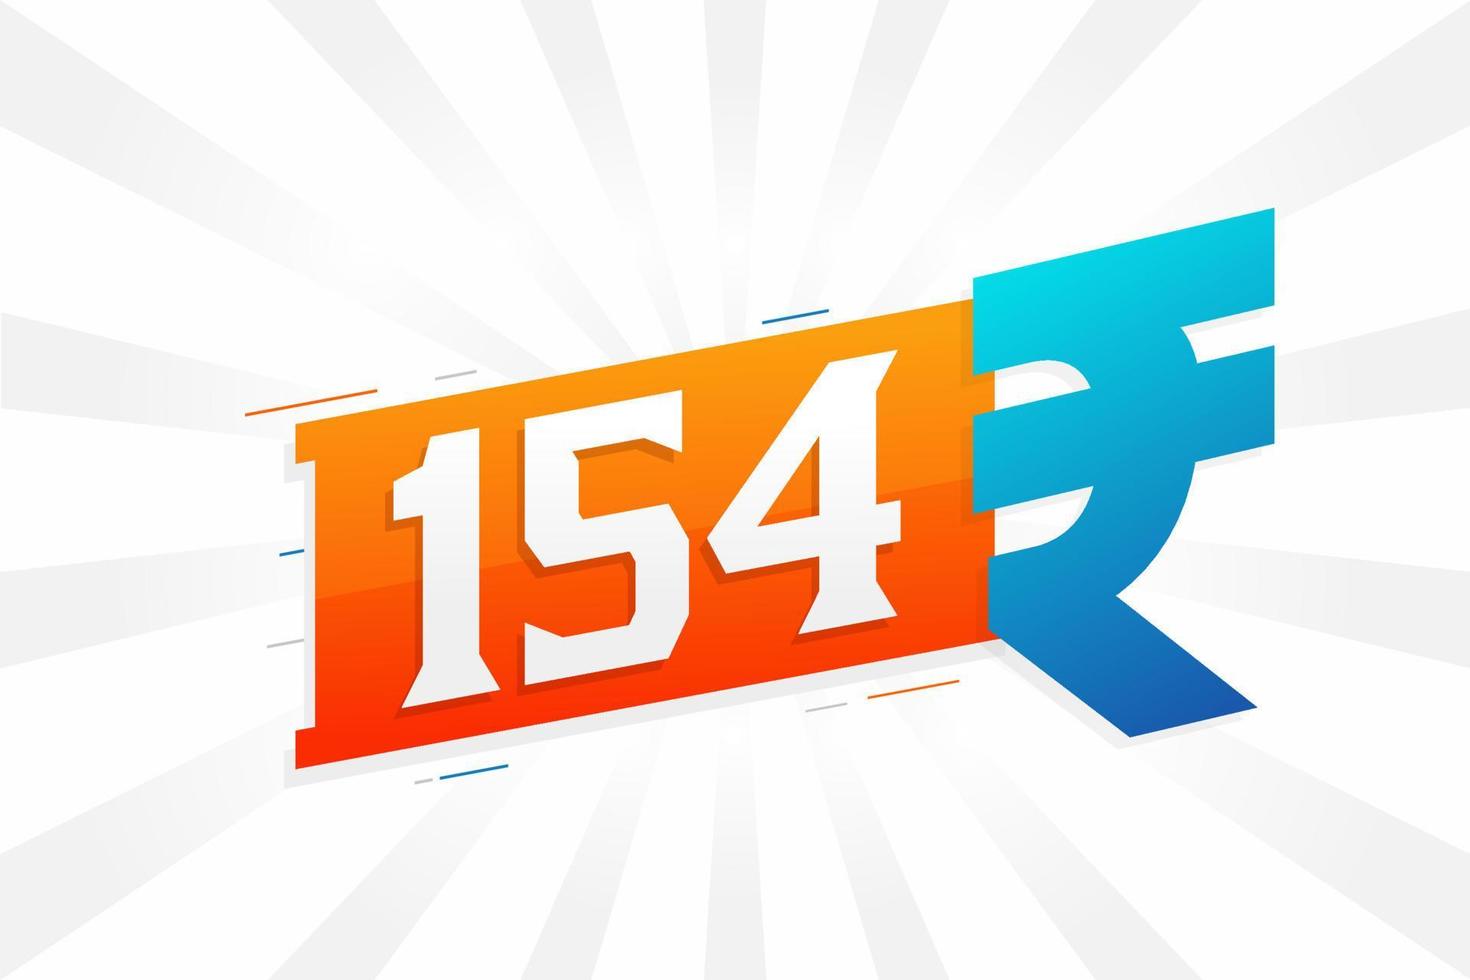 Imagen vectorial de texto en negrita del símbolo de 154 rupias. 154 rupia india signo de moneda ilustración vectorial vector